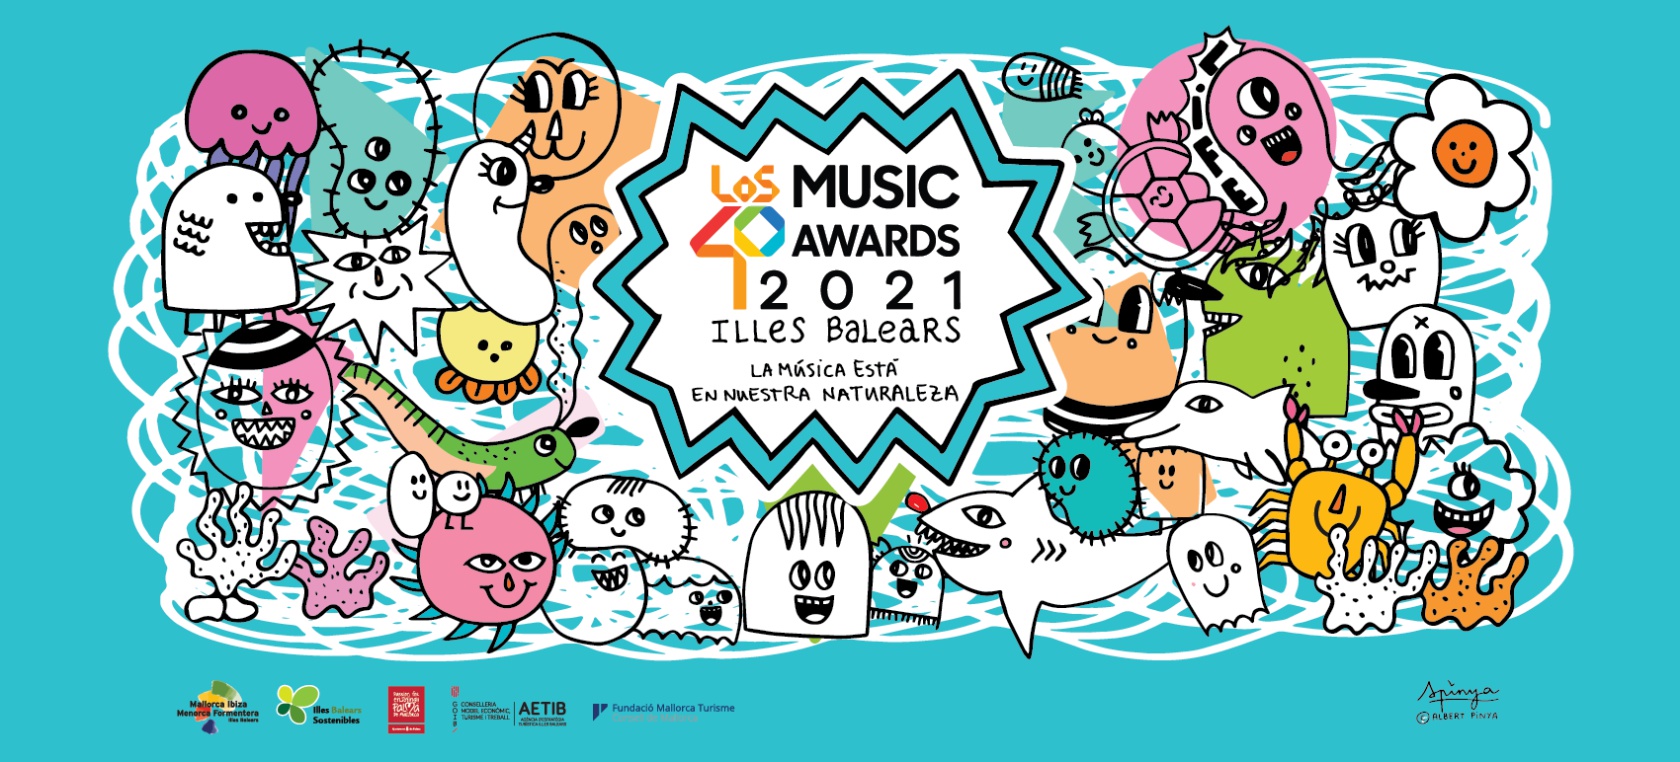 ¡Récord! Las entradas para LOS40 Music Awards 2021 Illes Balears se agotan en menos de dos horas